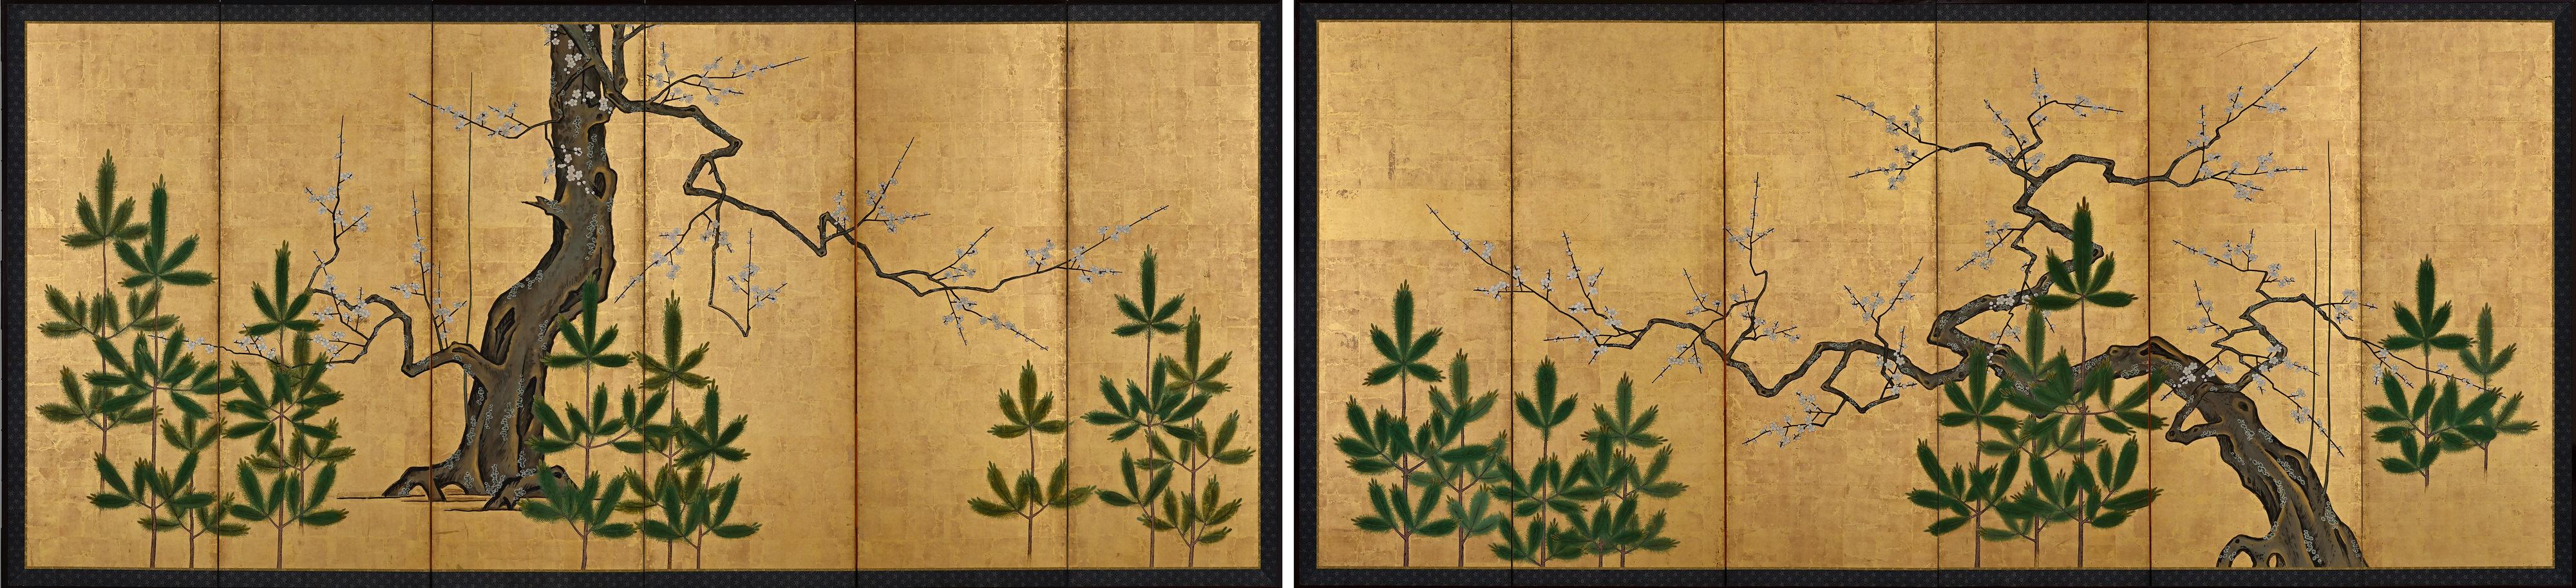 Abmessungen (pro Leinwand): H. 176 cm x B. 378 cm (69'' x 149'')

Dieses Paar japanischer Paravents zeigt blühende Pflaumenbäume zwischen jungen Kiefern. Sie sollen den Wechsel der Jahreszeiten, vom Winter bis zum Frühling, einfangen, die zyklische